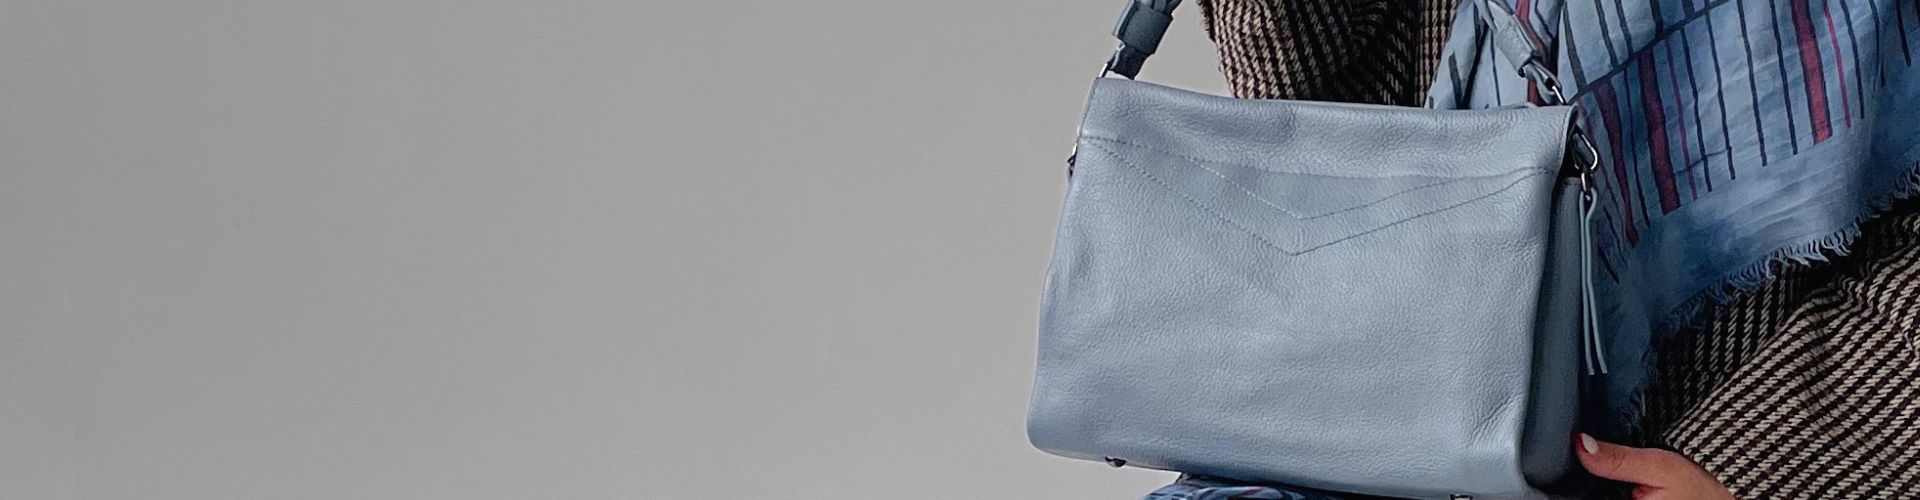 Скидка на сумки и аксессуары от модных <br> французских и итальянских брендов <br>  в магазине «История сумок» - Bag Story.              Цены уточняйте в магазинах.